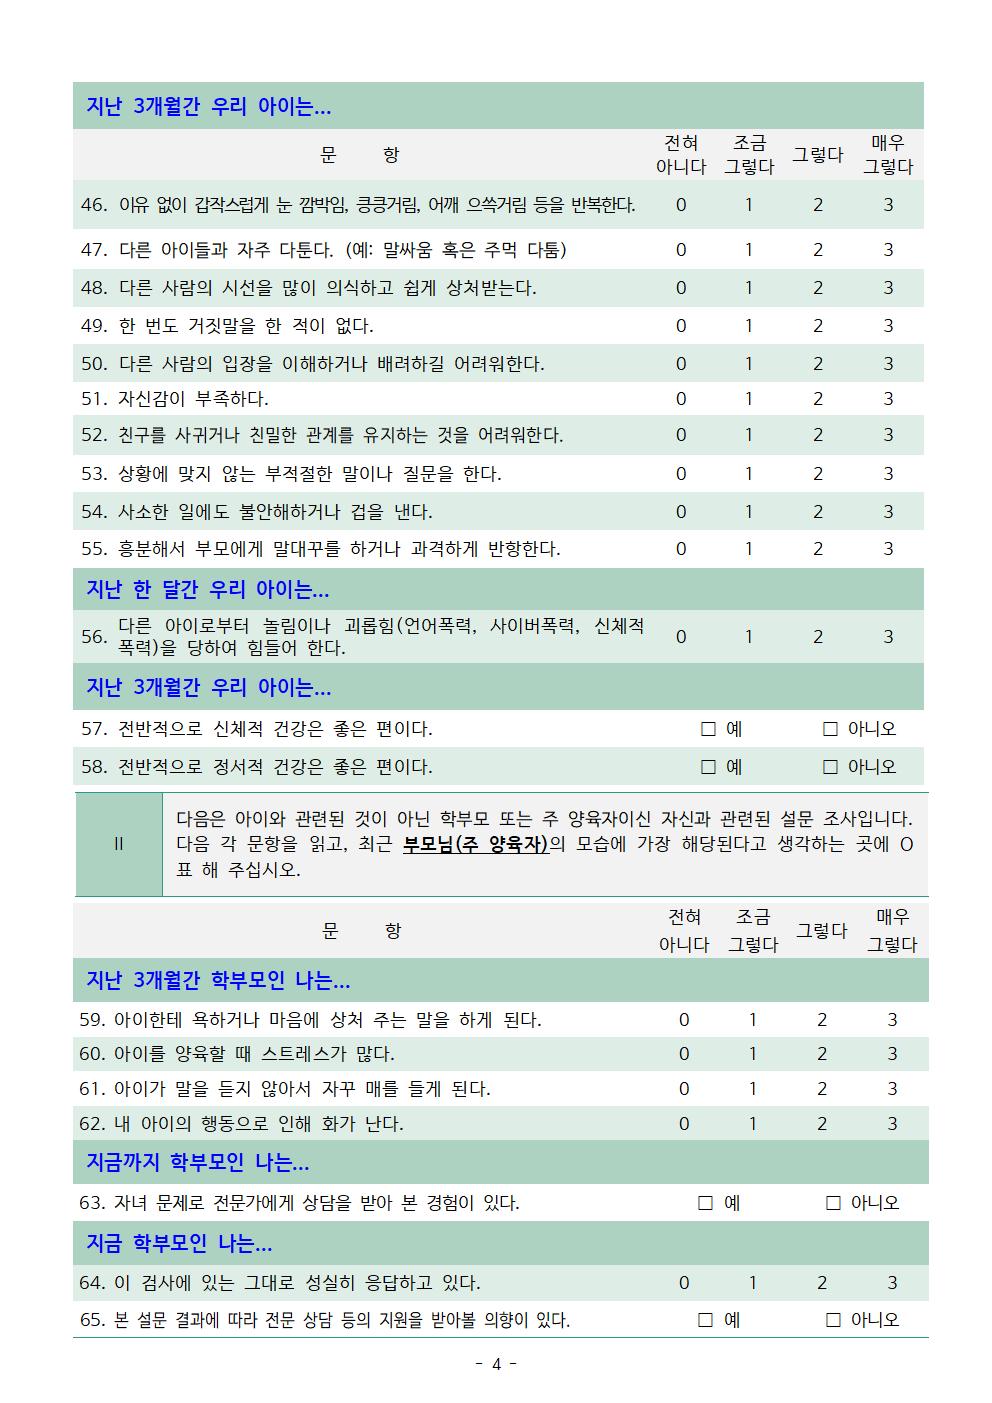 제27호-1, 4학년 학생정서행동특성검사 안내004